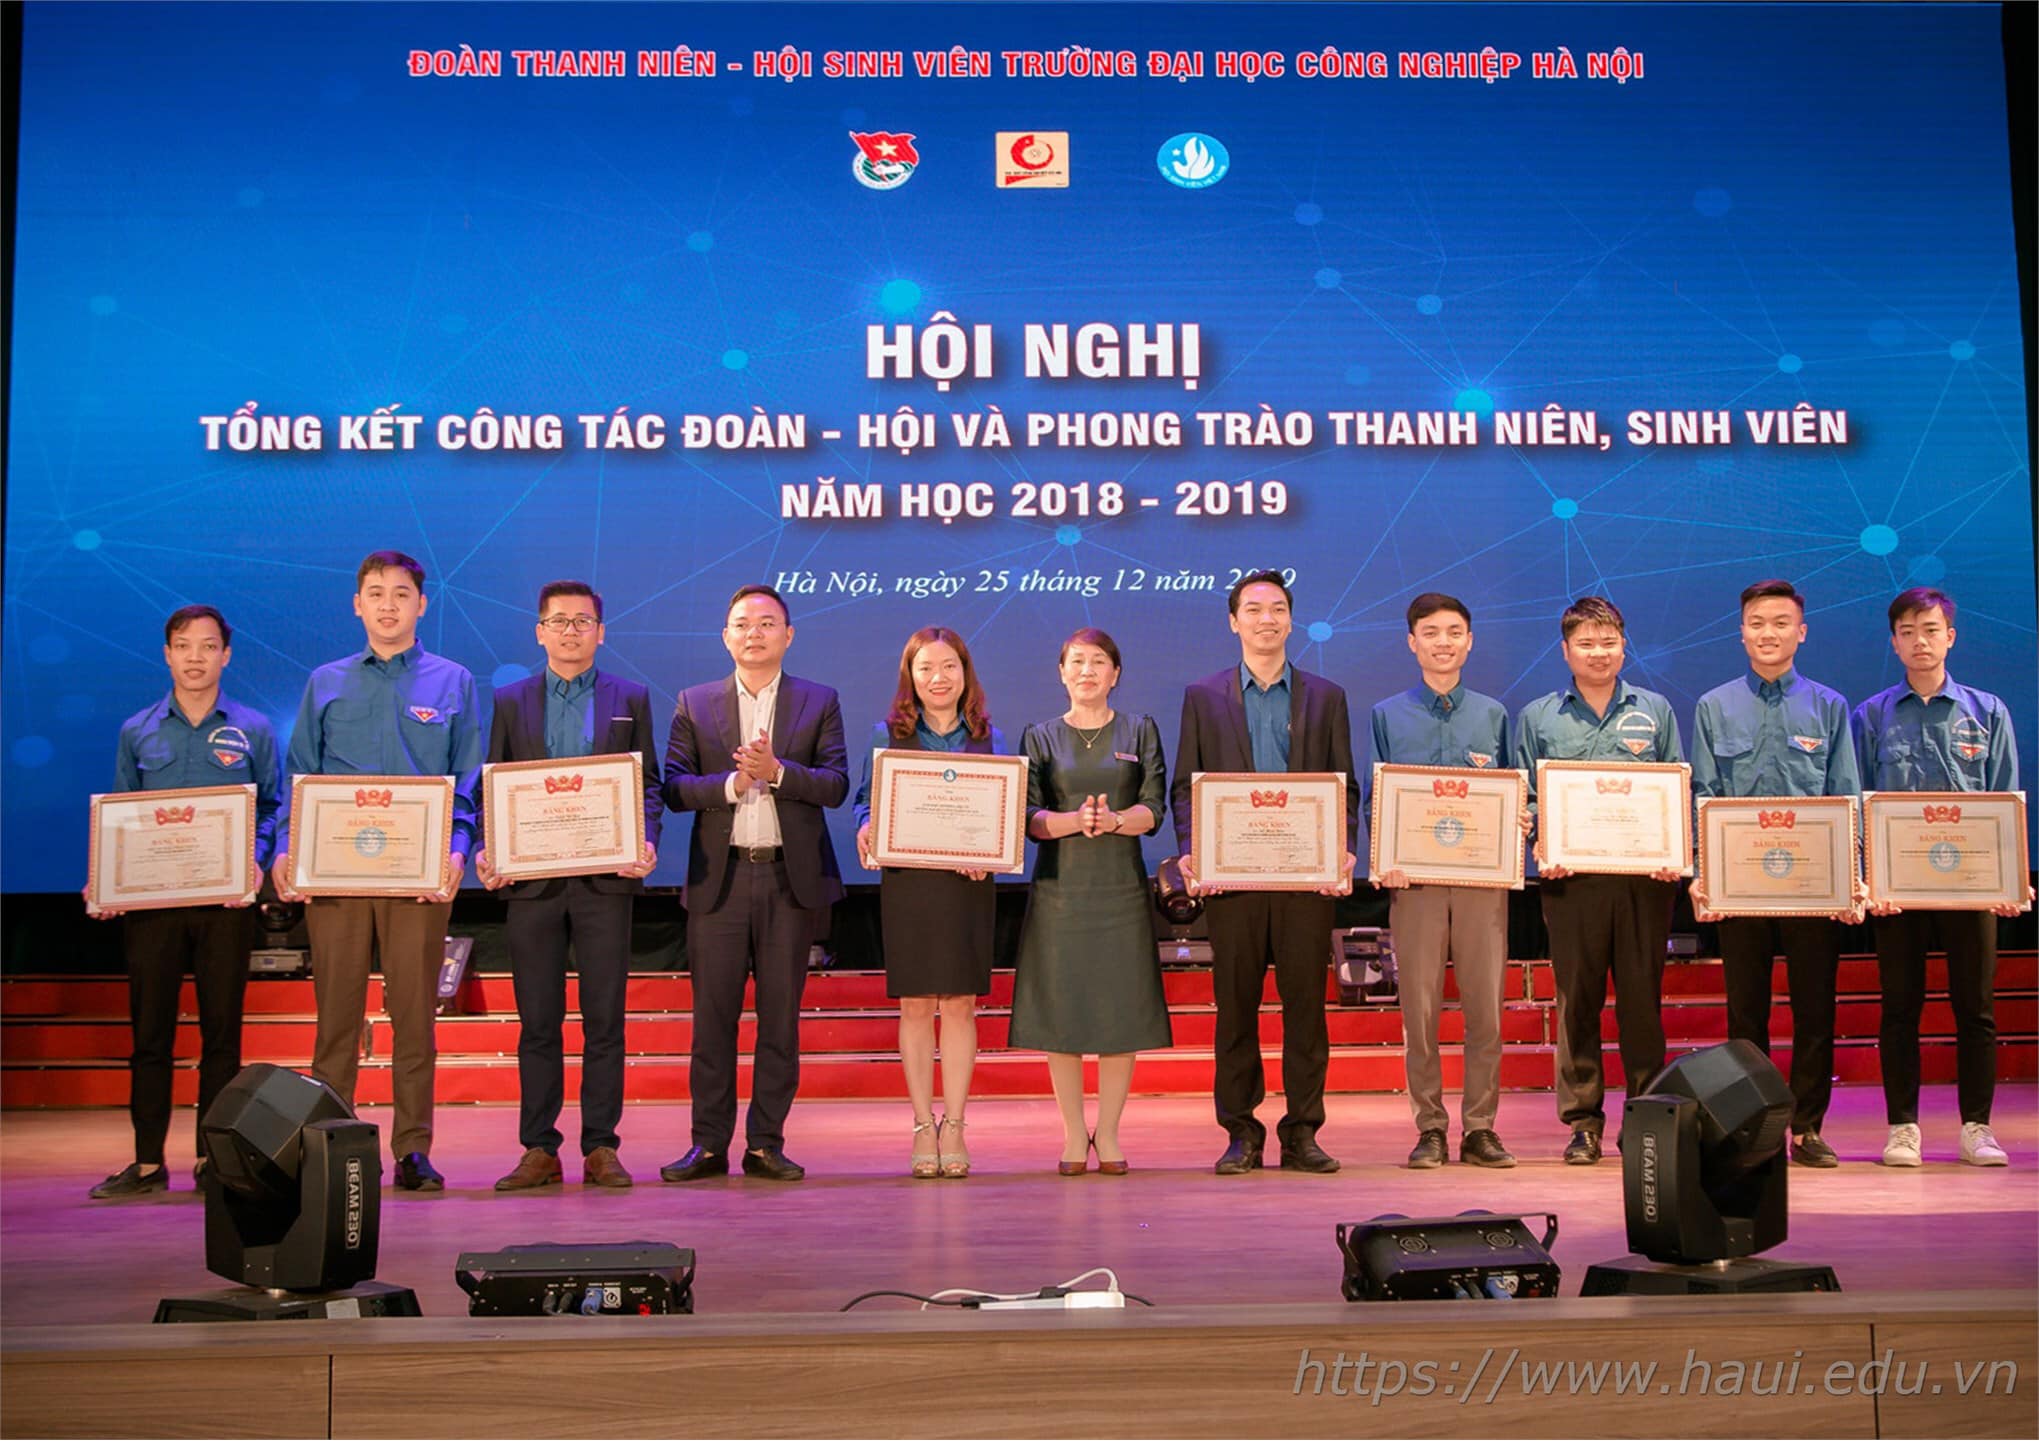 Liên chi Đoàn khoa Điện tử xuất sắc nhận Bằng khen của Trung ương Đoàn năm học 2018 - 2019